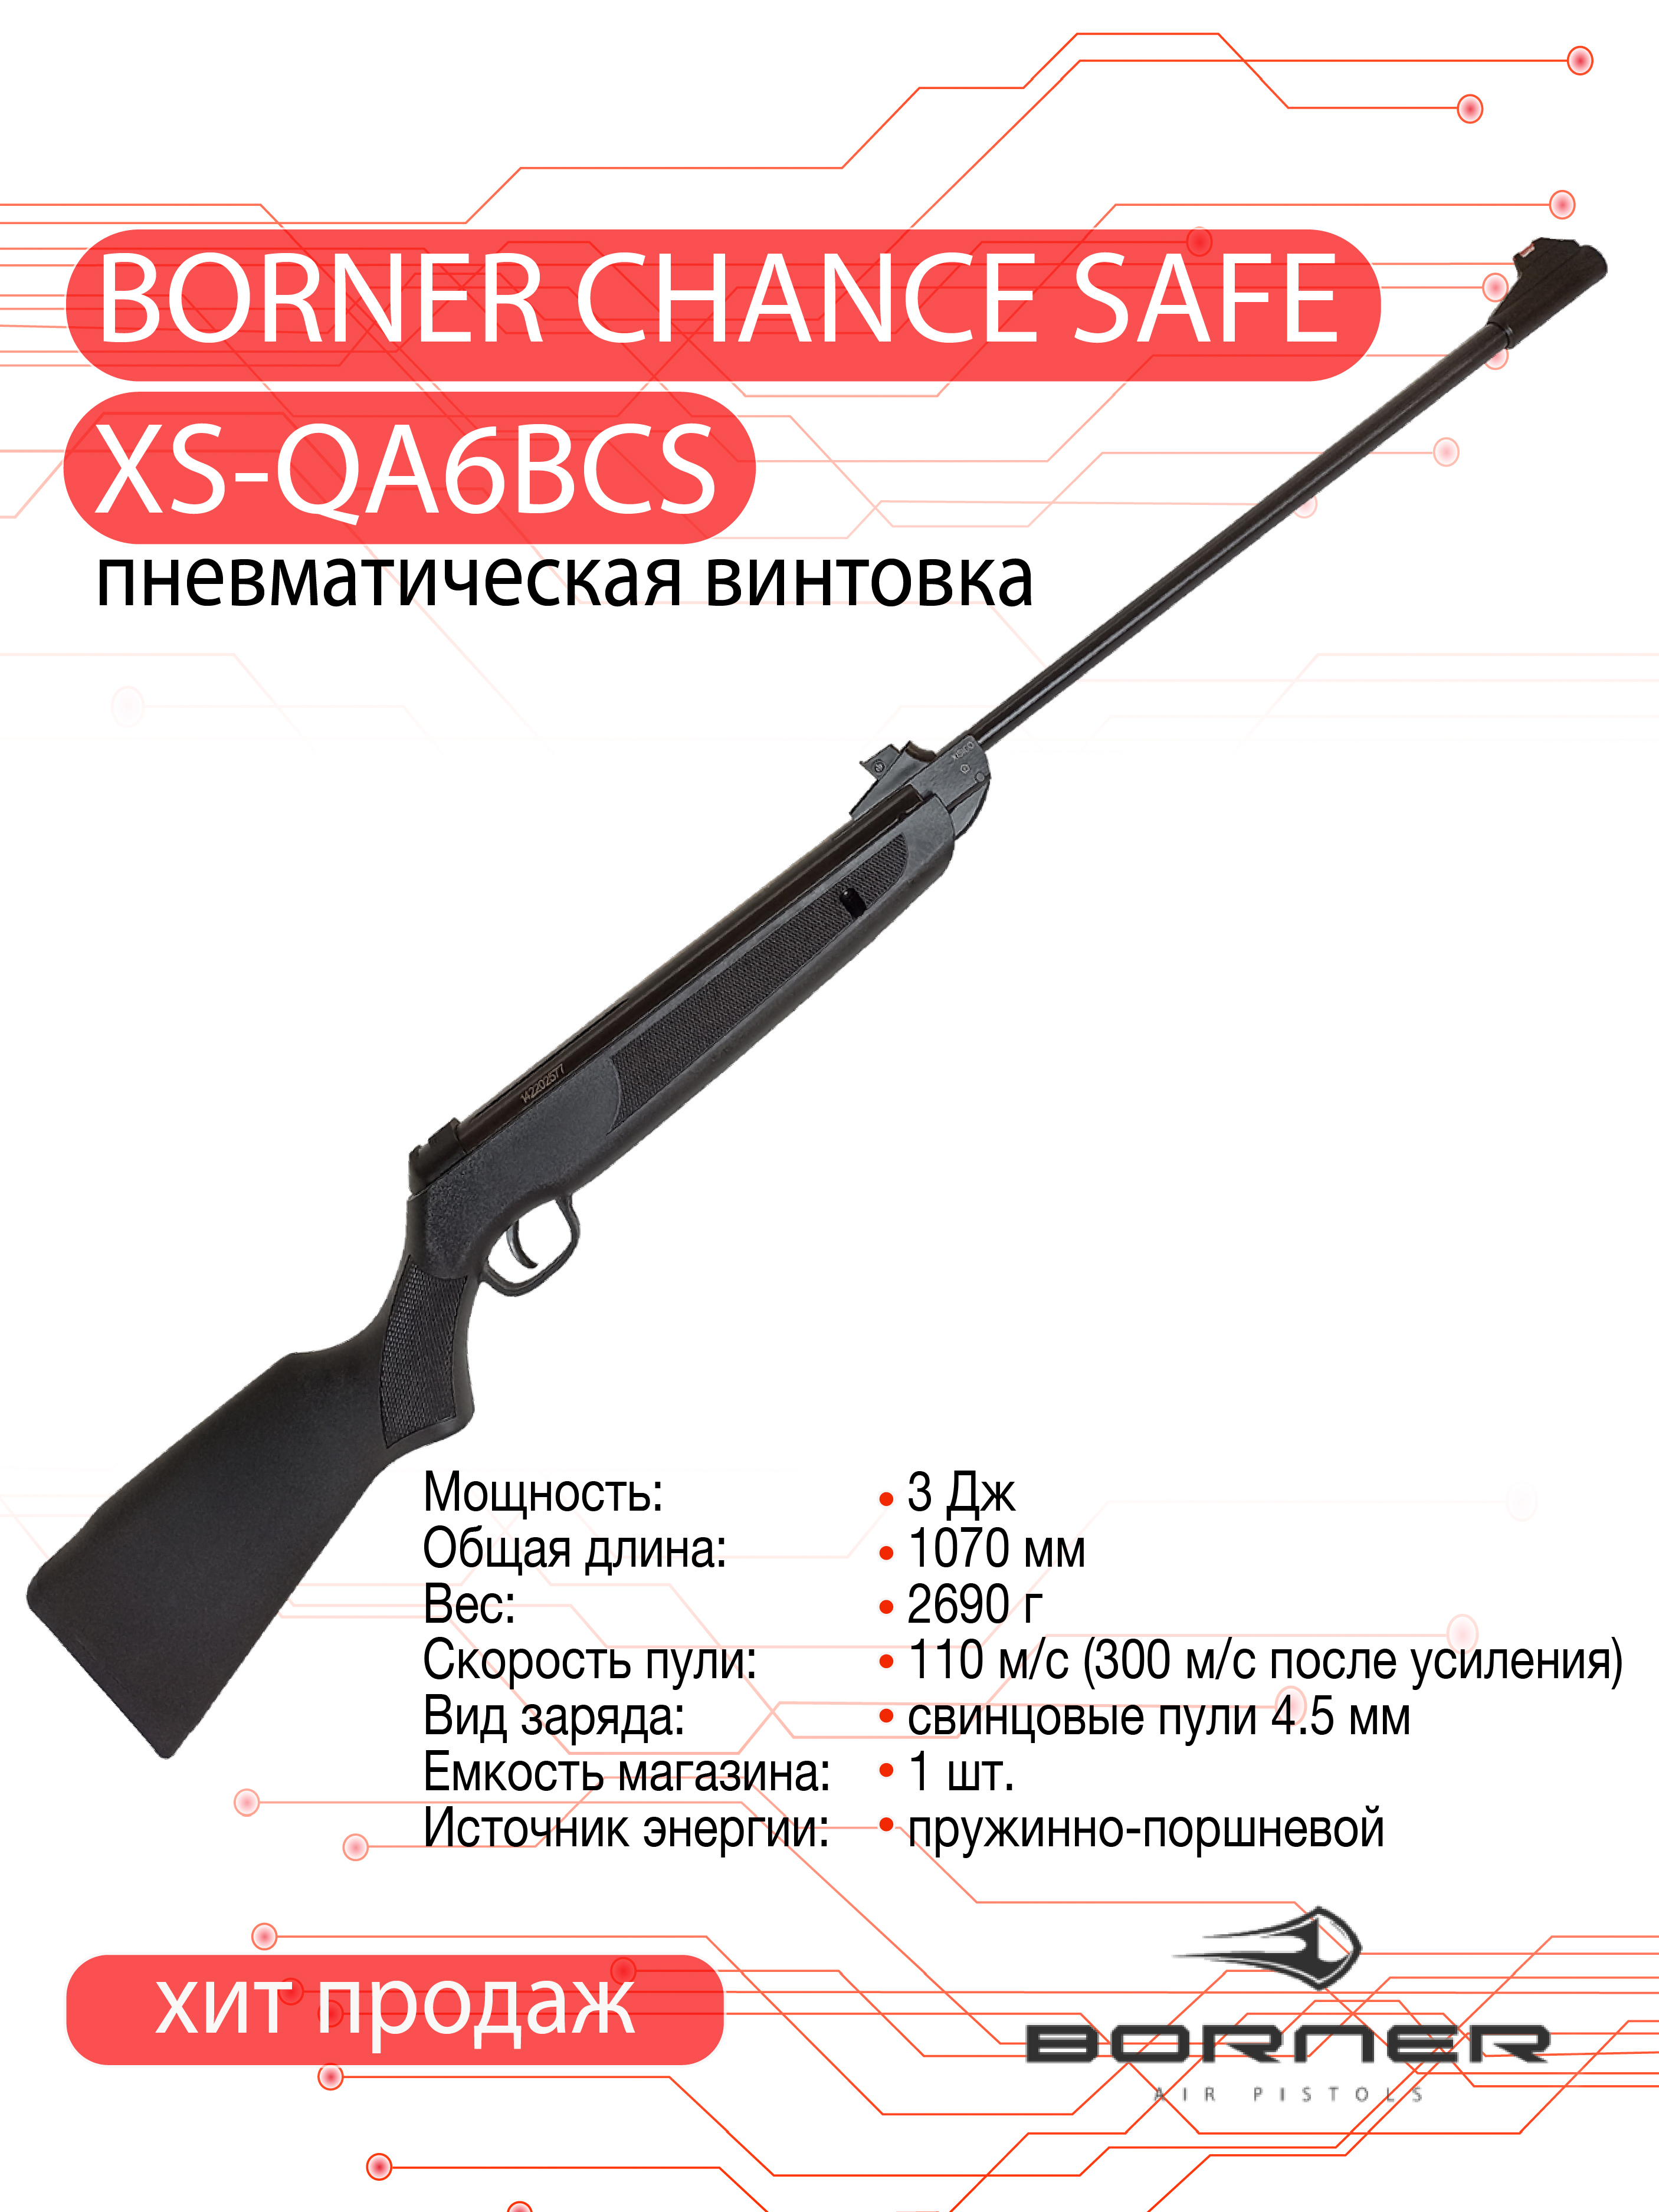 Винтовка пневматическая Borner Chance Safe (пластик, Black, XS-QA6BCS) кал. 4.5 мм, 3 Дж.